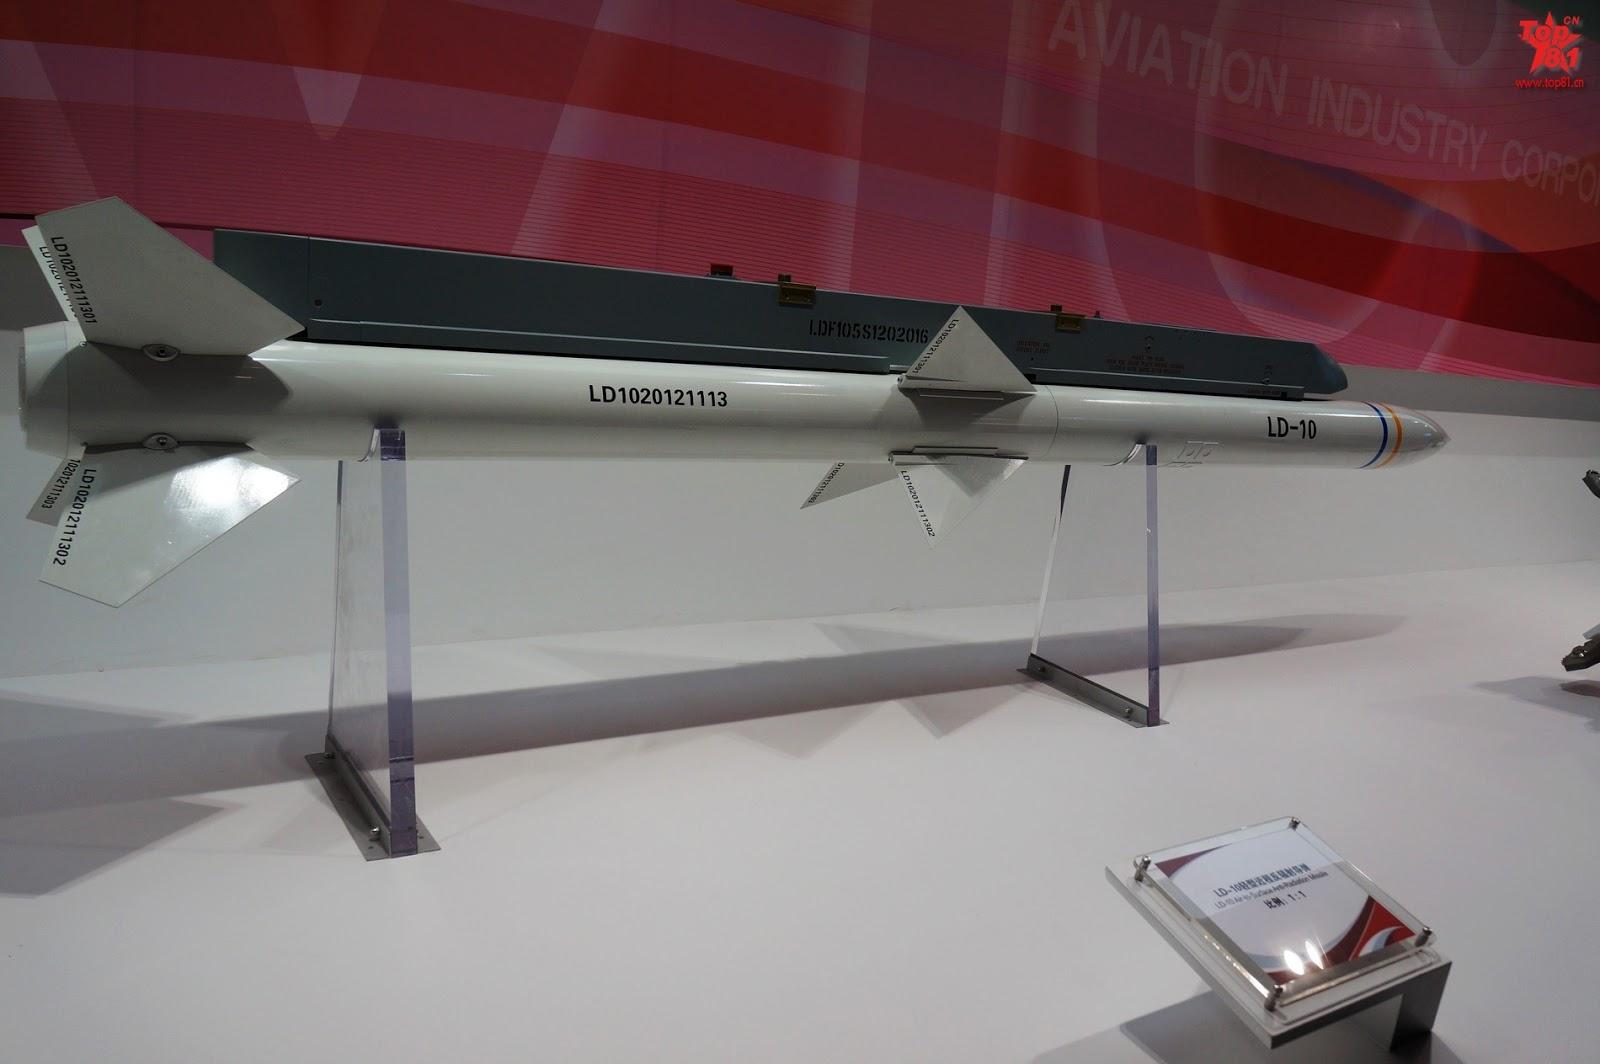 كشفت الصين النقاب عن صاروخ LD-10 المُطلَق من الجو خلال معرض Zhuhai Air Show 2012